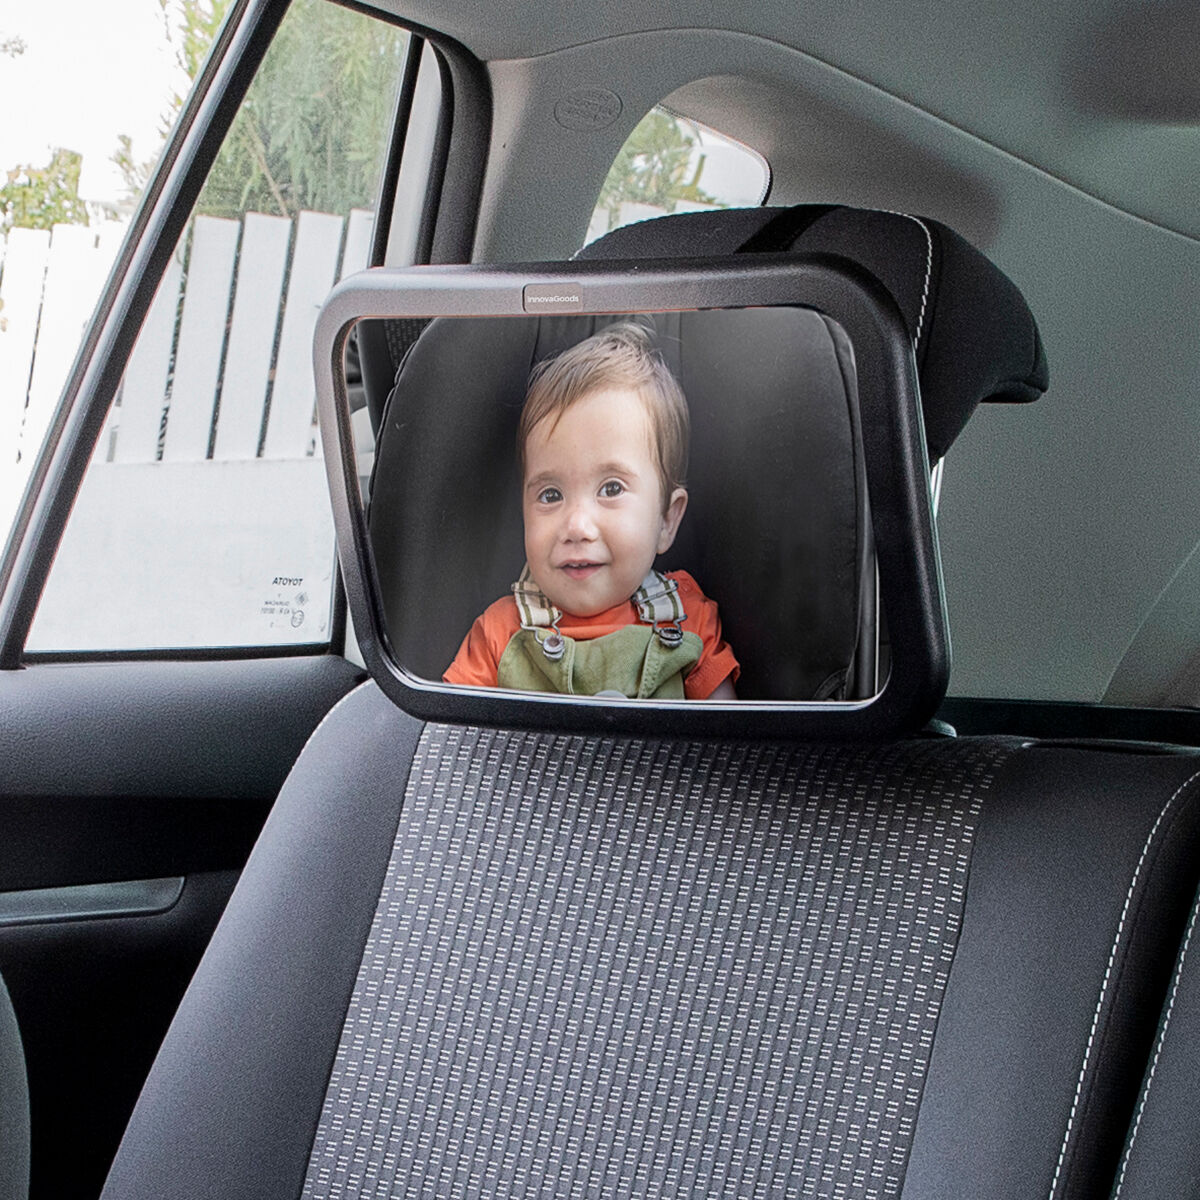 Espelho Divertido Para Bebês Pendurado No Carro, Pingente No Banco Traseiro  Do Carro, Padrão Dobrável Para Treinamento Da Visão Do Bebê, Espelho  Retangular, Brinquedo Para Pendurar No Carro, Espelho De Observação Do